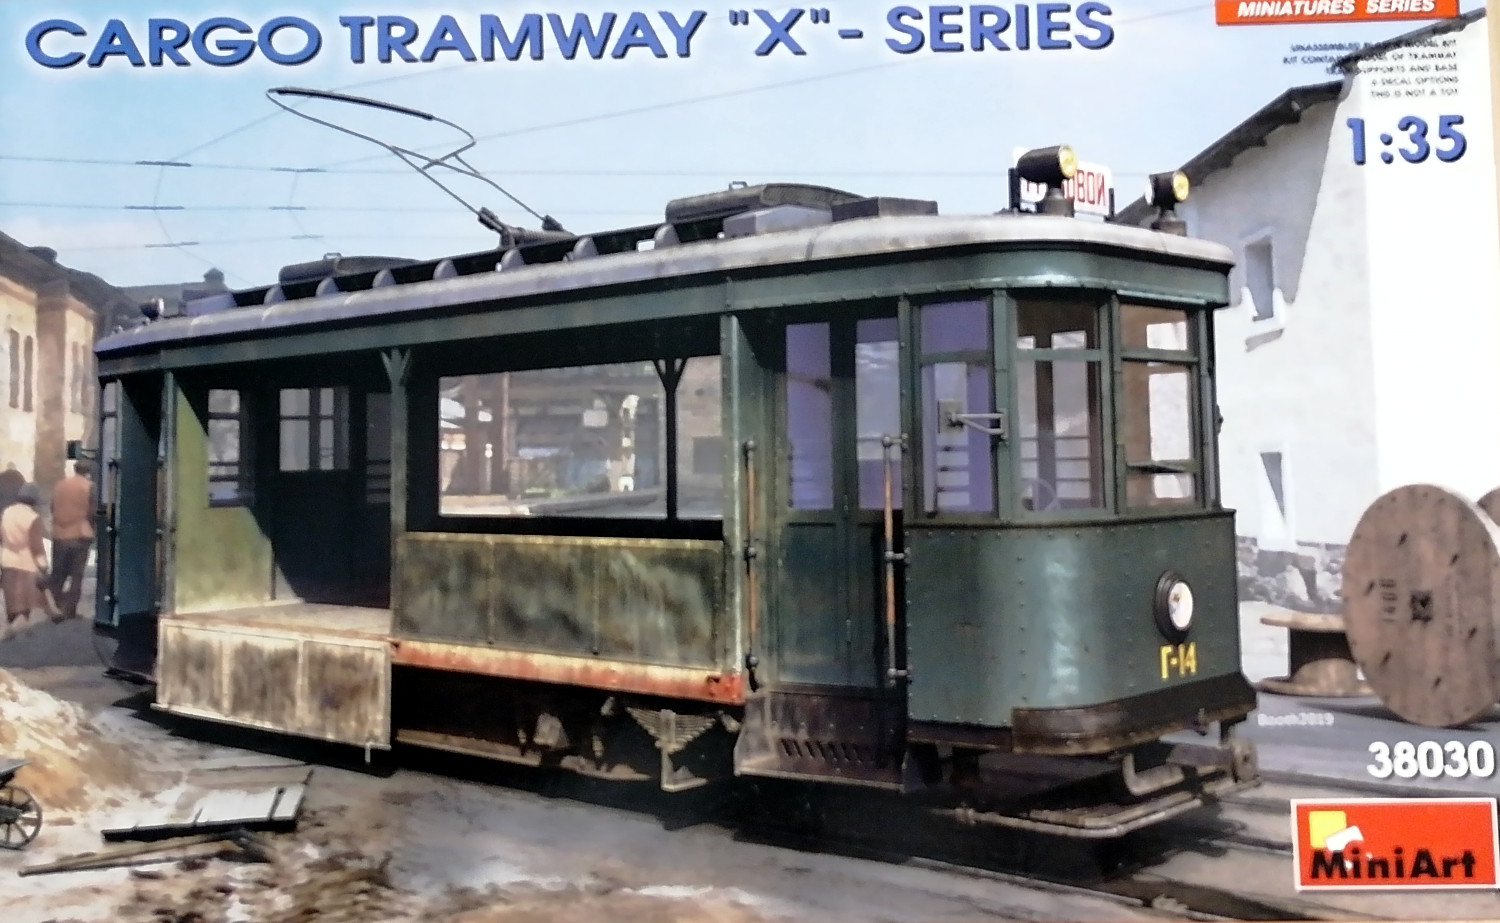 Cargo Tramway "X" série au 1/35 (Miniart ref 38030) 4XRSMb-Tram01